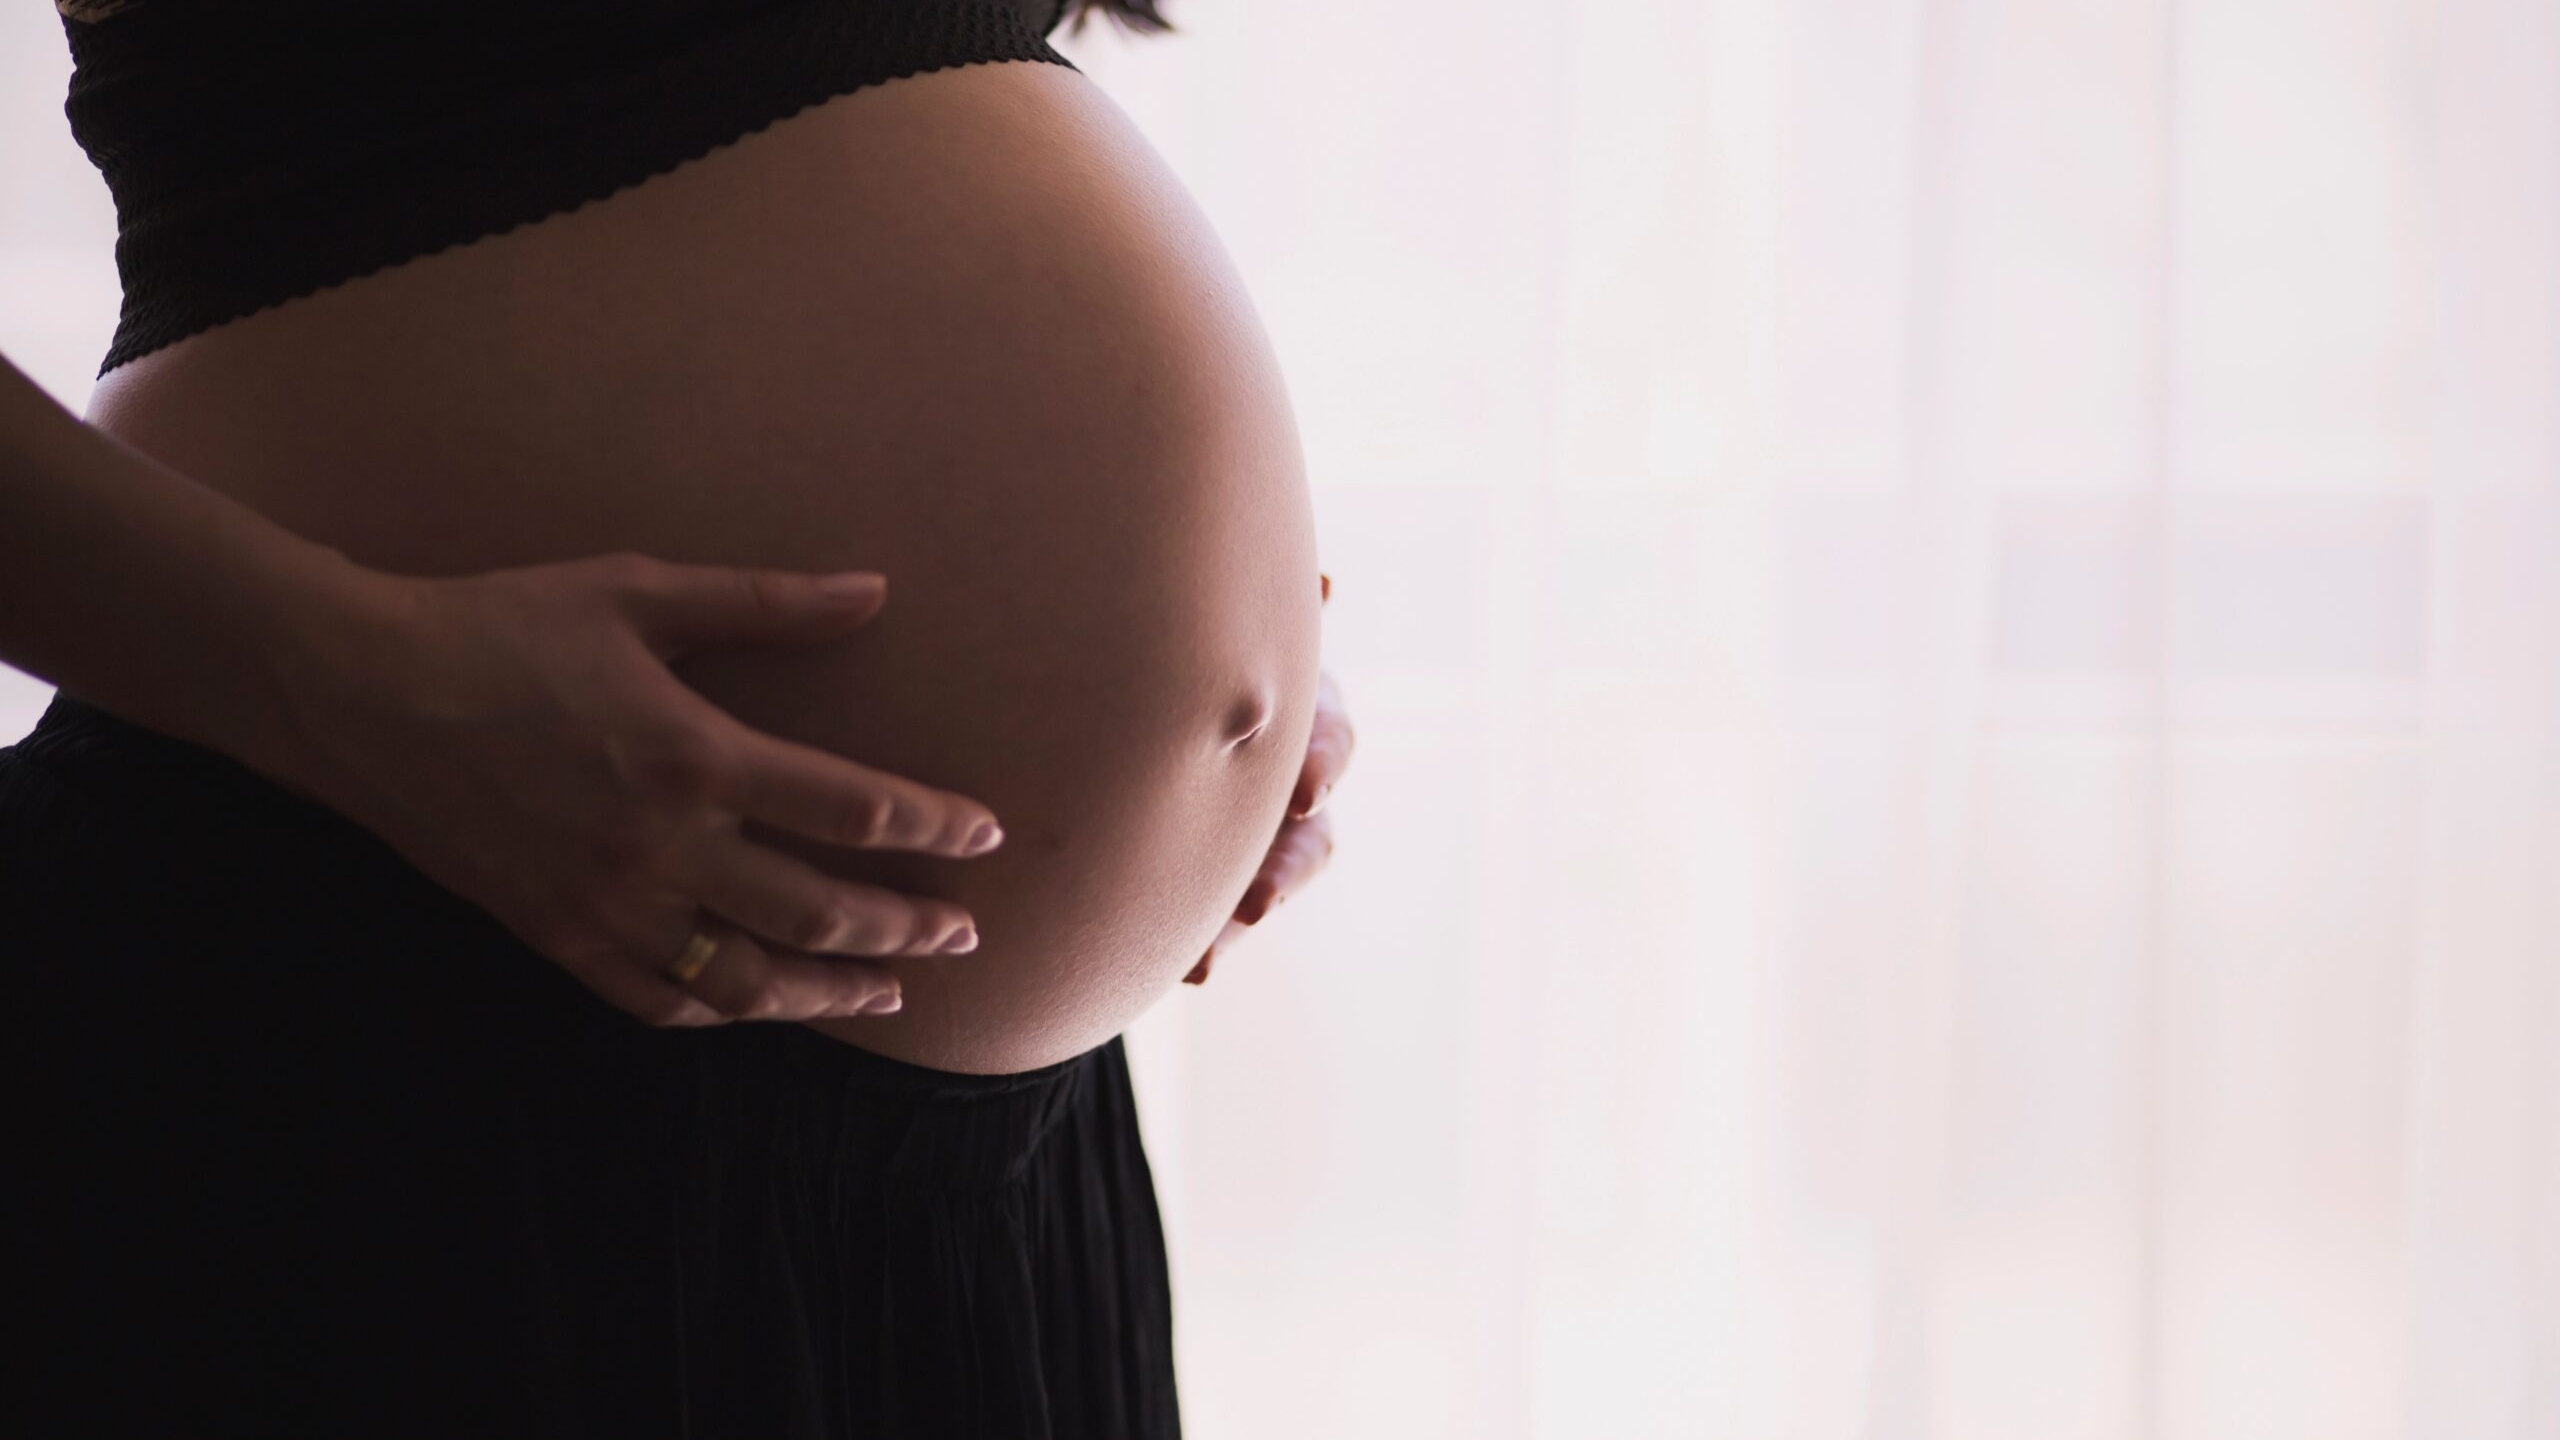 Акушер-гинеколог рассказал, что цвет и форма лица могут измениться во время беременности